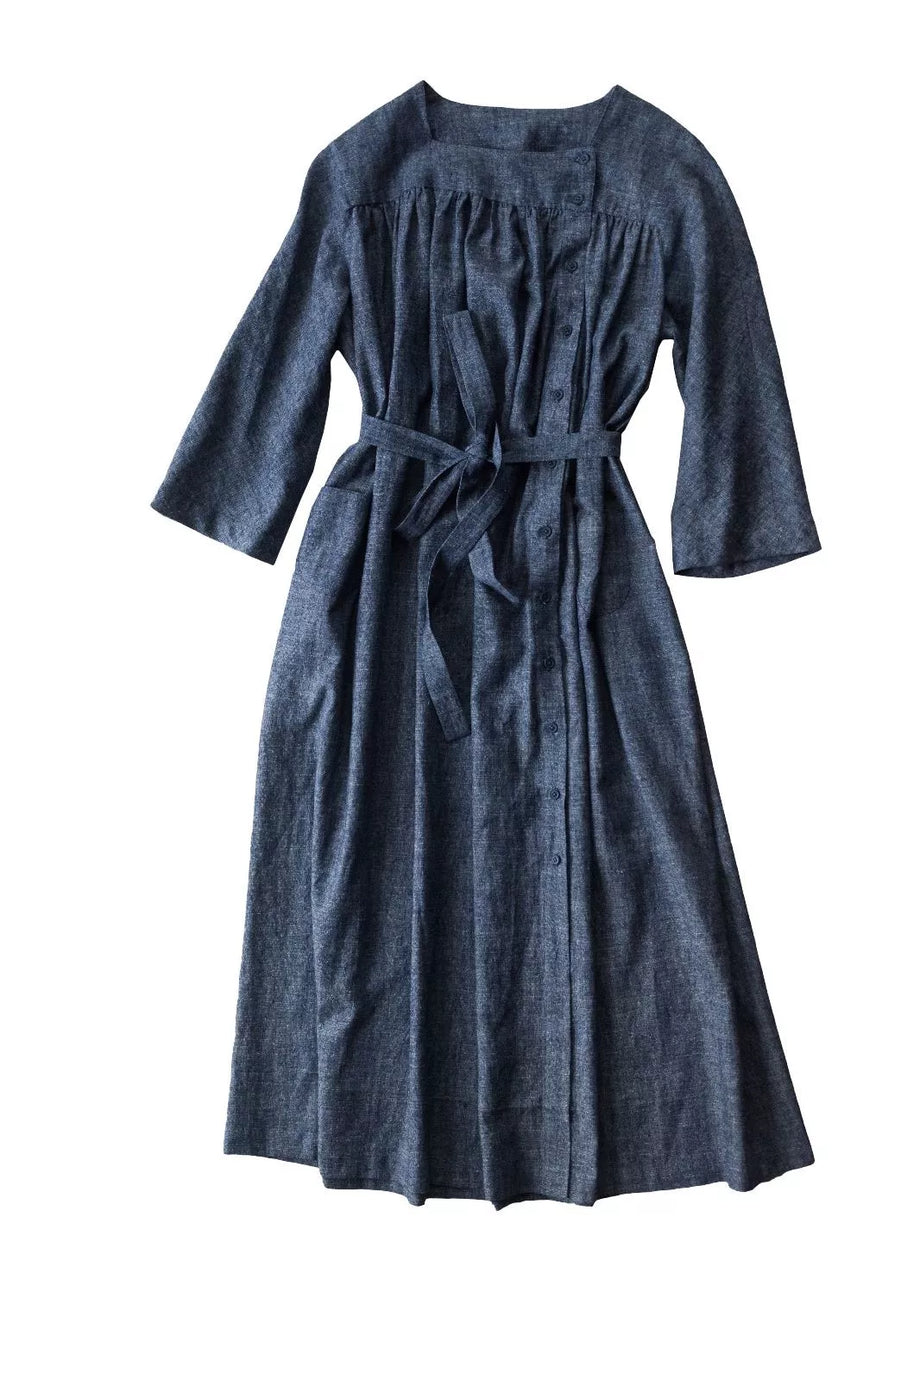 Omilie Shirt & Dress (Size UK 6-28 / XS-7X) – Bangor Haberdashery